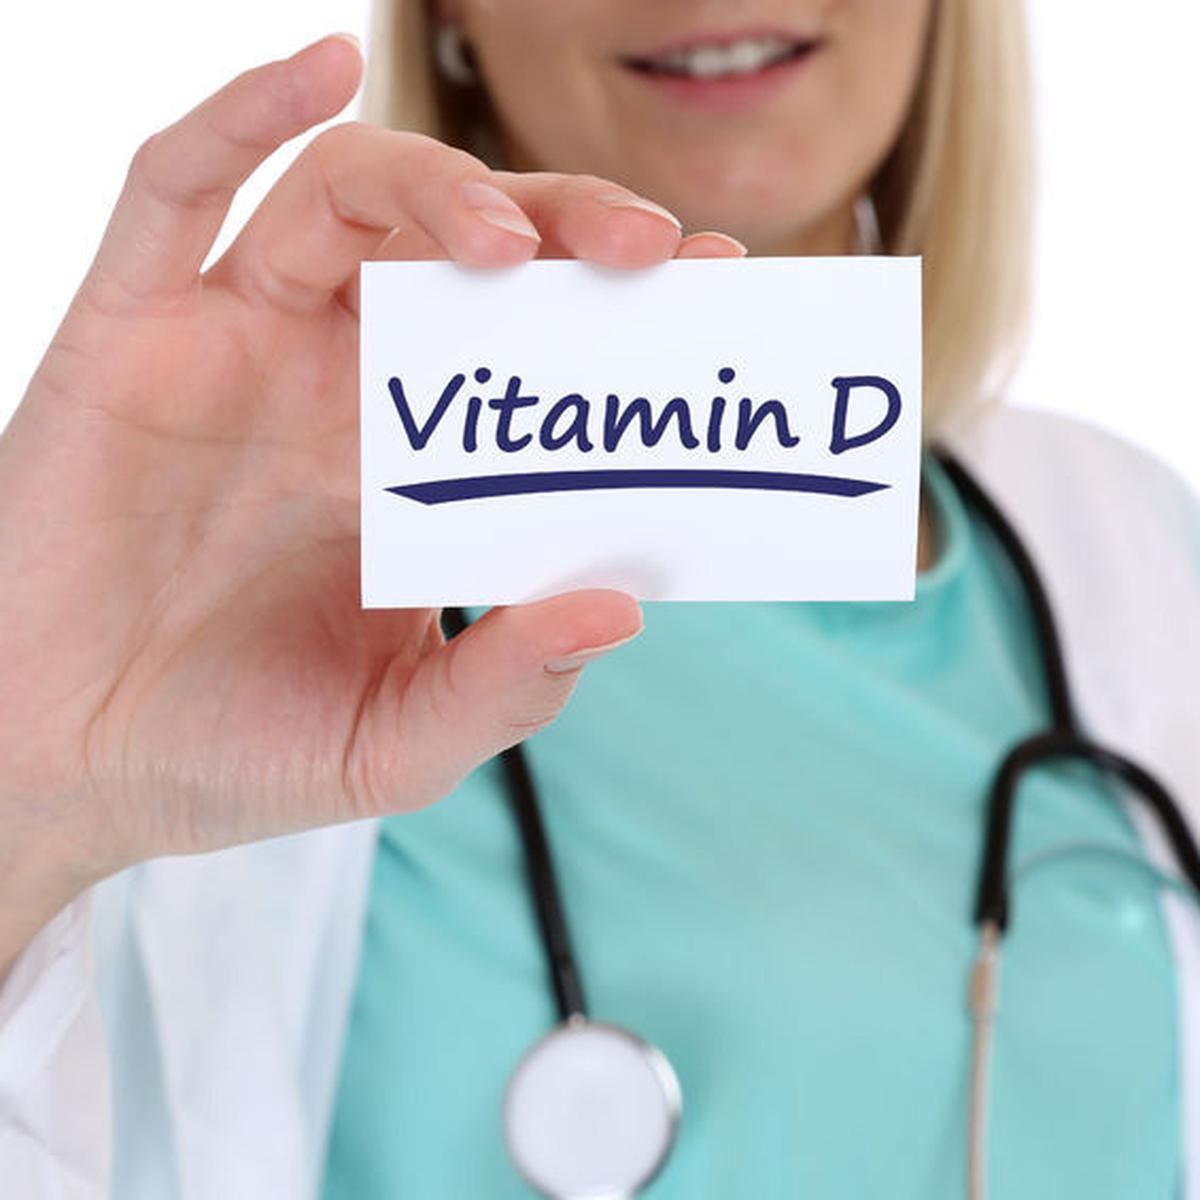 Gangguan yang terjadi karena kekurangan vitamin a tampak pada gangguan sistem